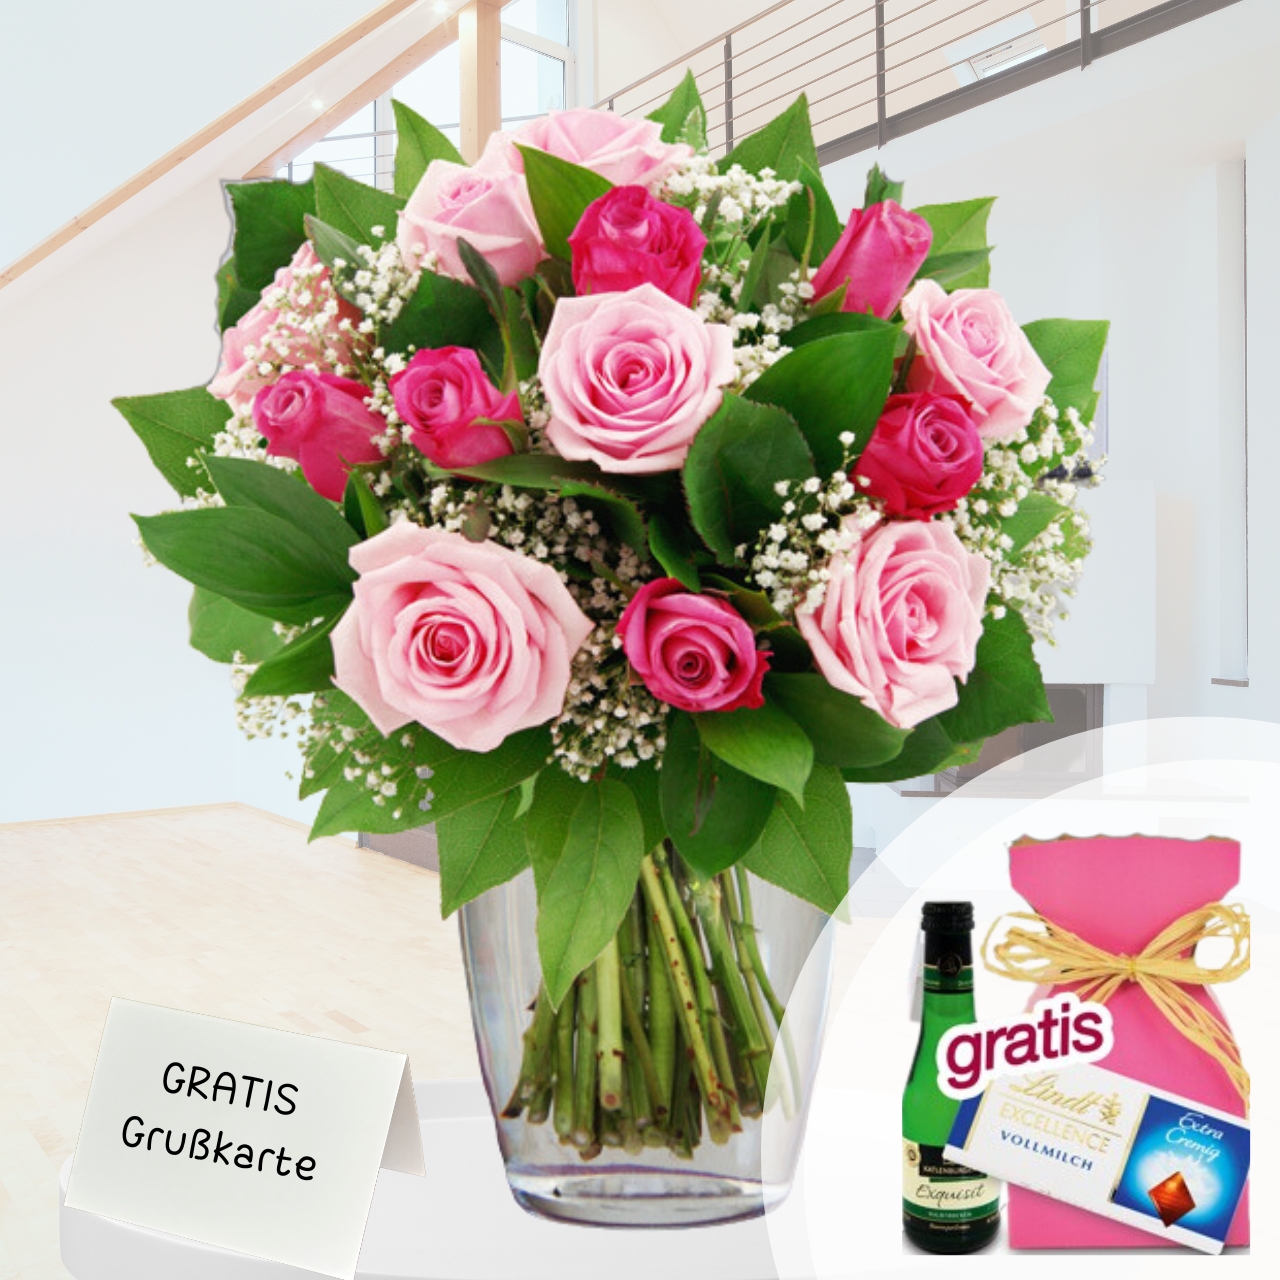 13 Rosen in rosa / pink bestellen romantische Einladung